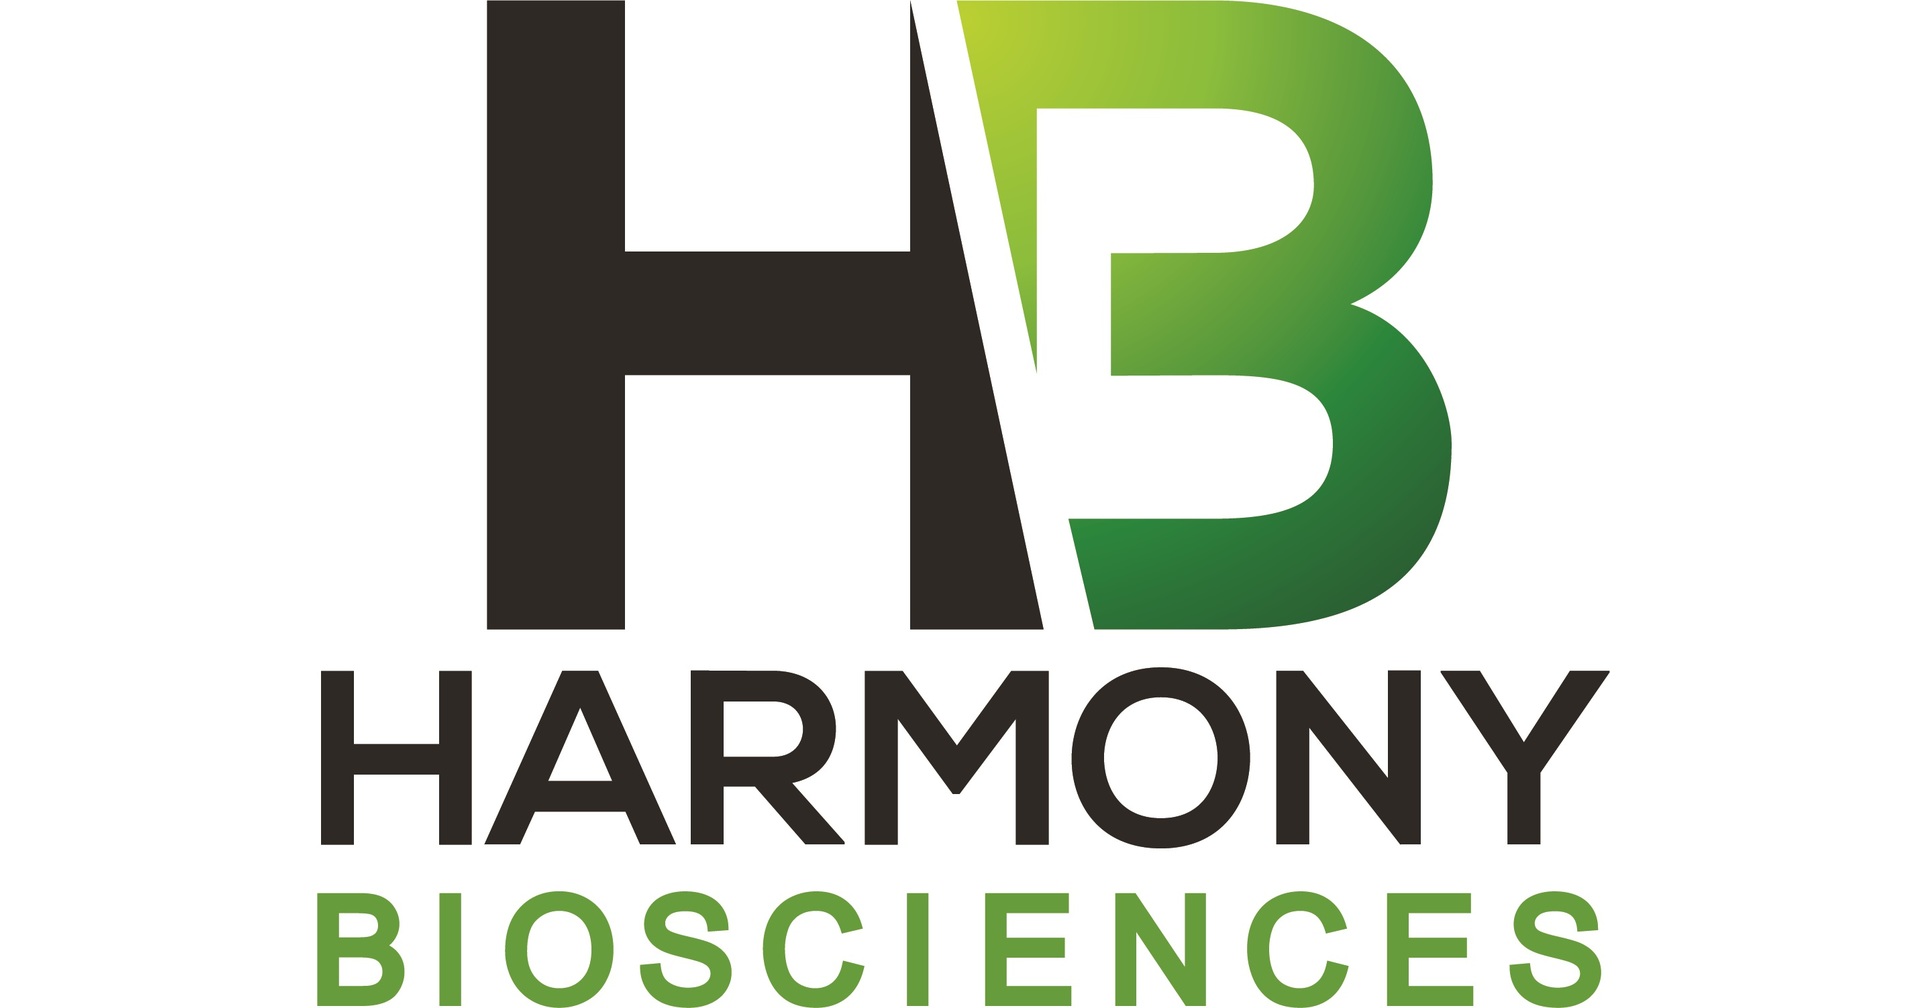 A HARMONY BIOSCIENCES PARTICIPOU DA 44ª CONFERÊNCIA GLOBAL DE SAÚDE DA GOLDMAN SACHS